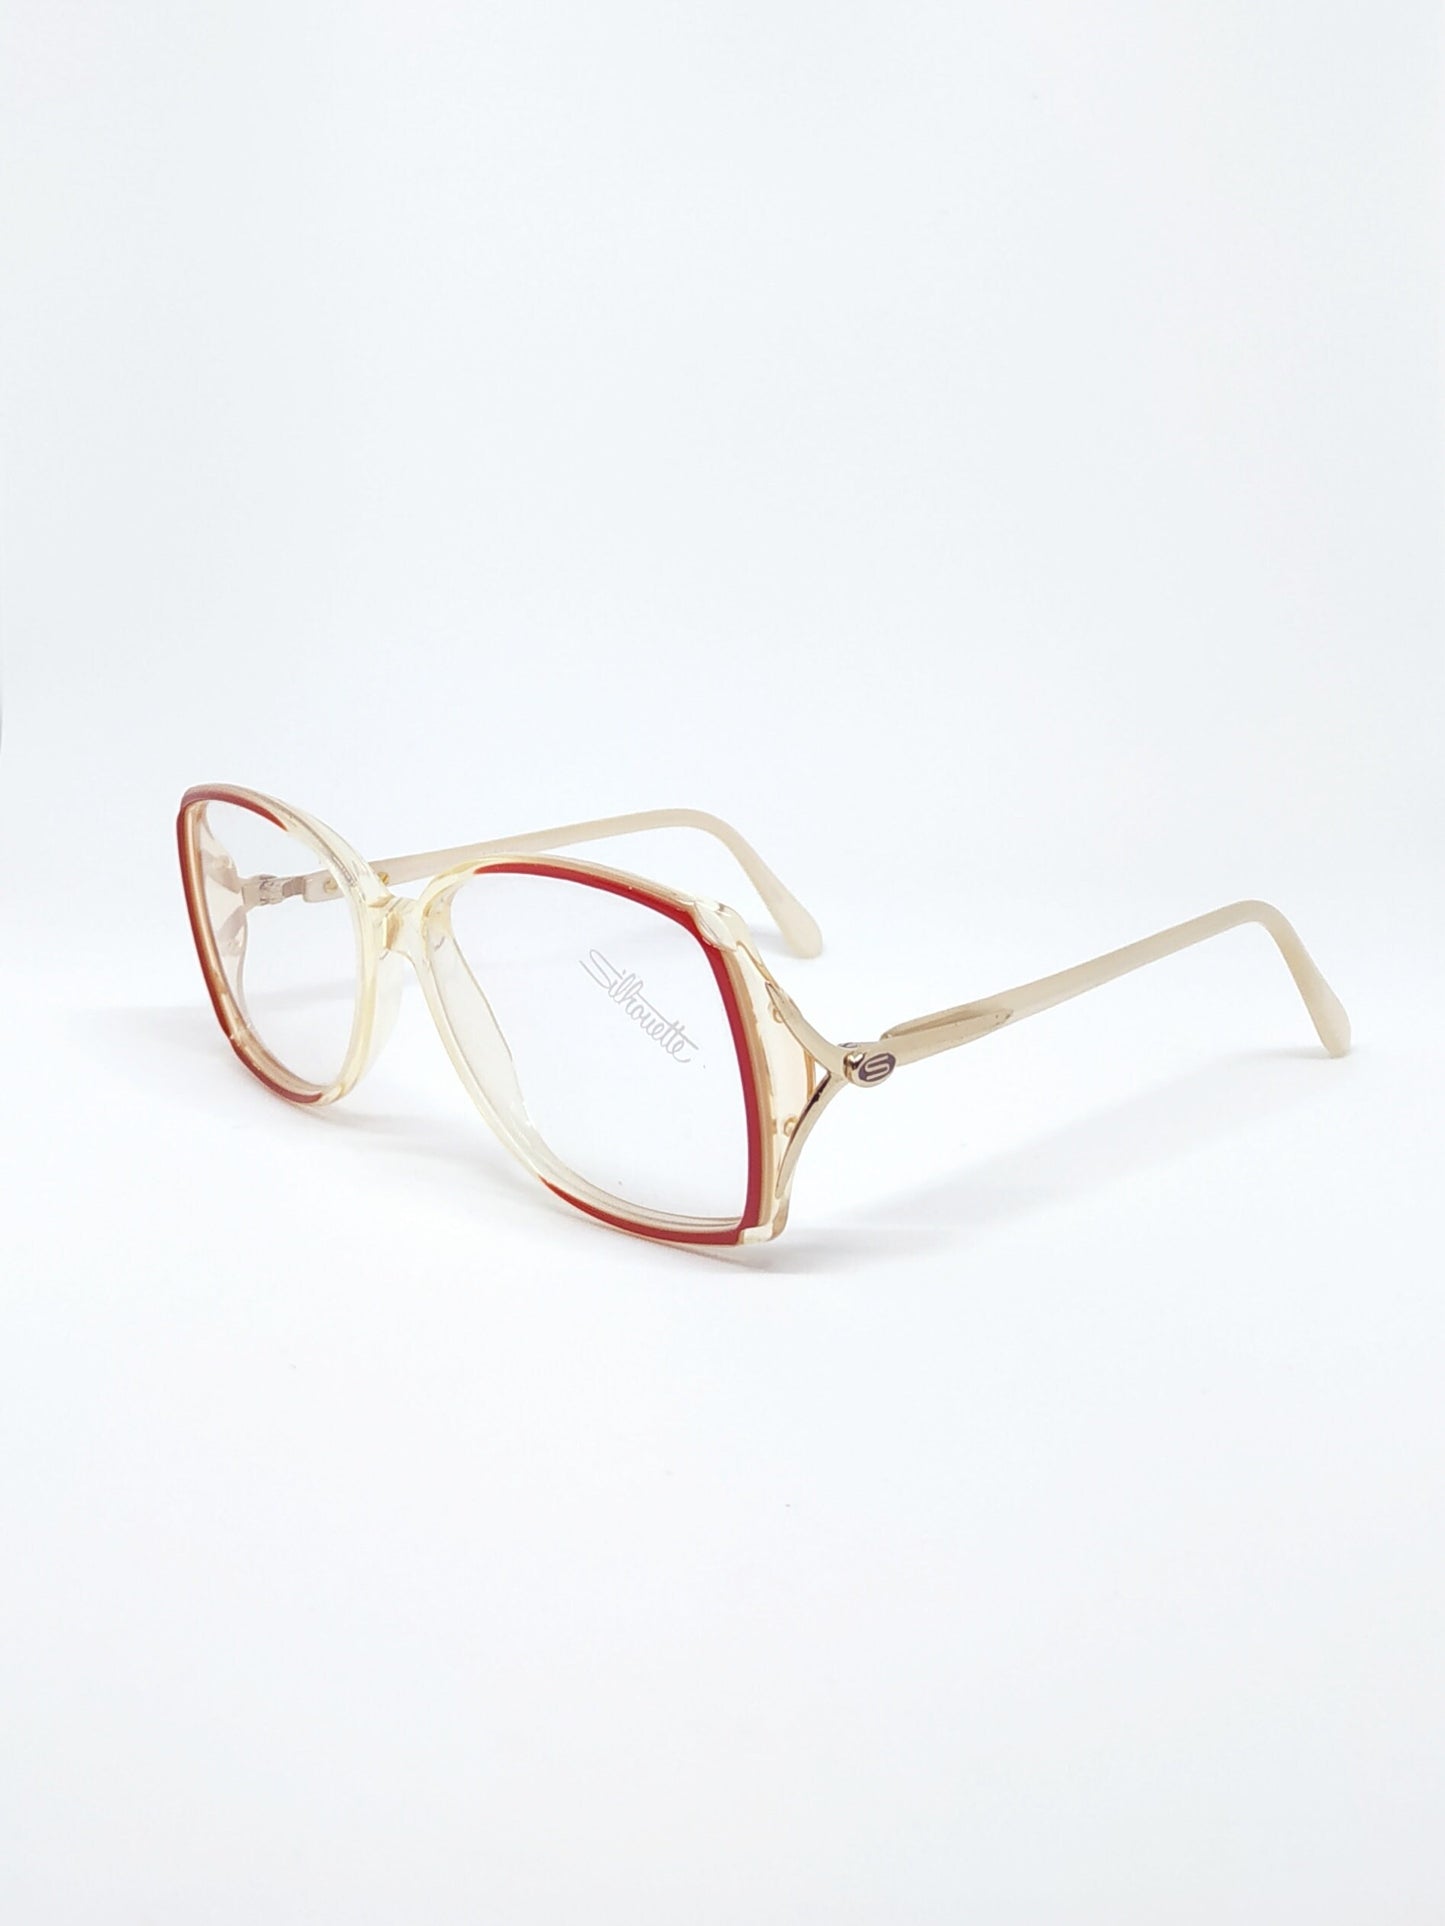 Vintage New old stock eyeglasses frames June